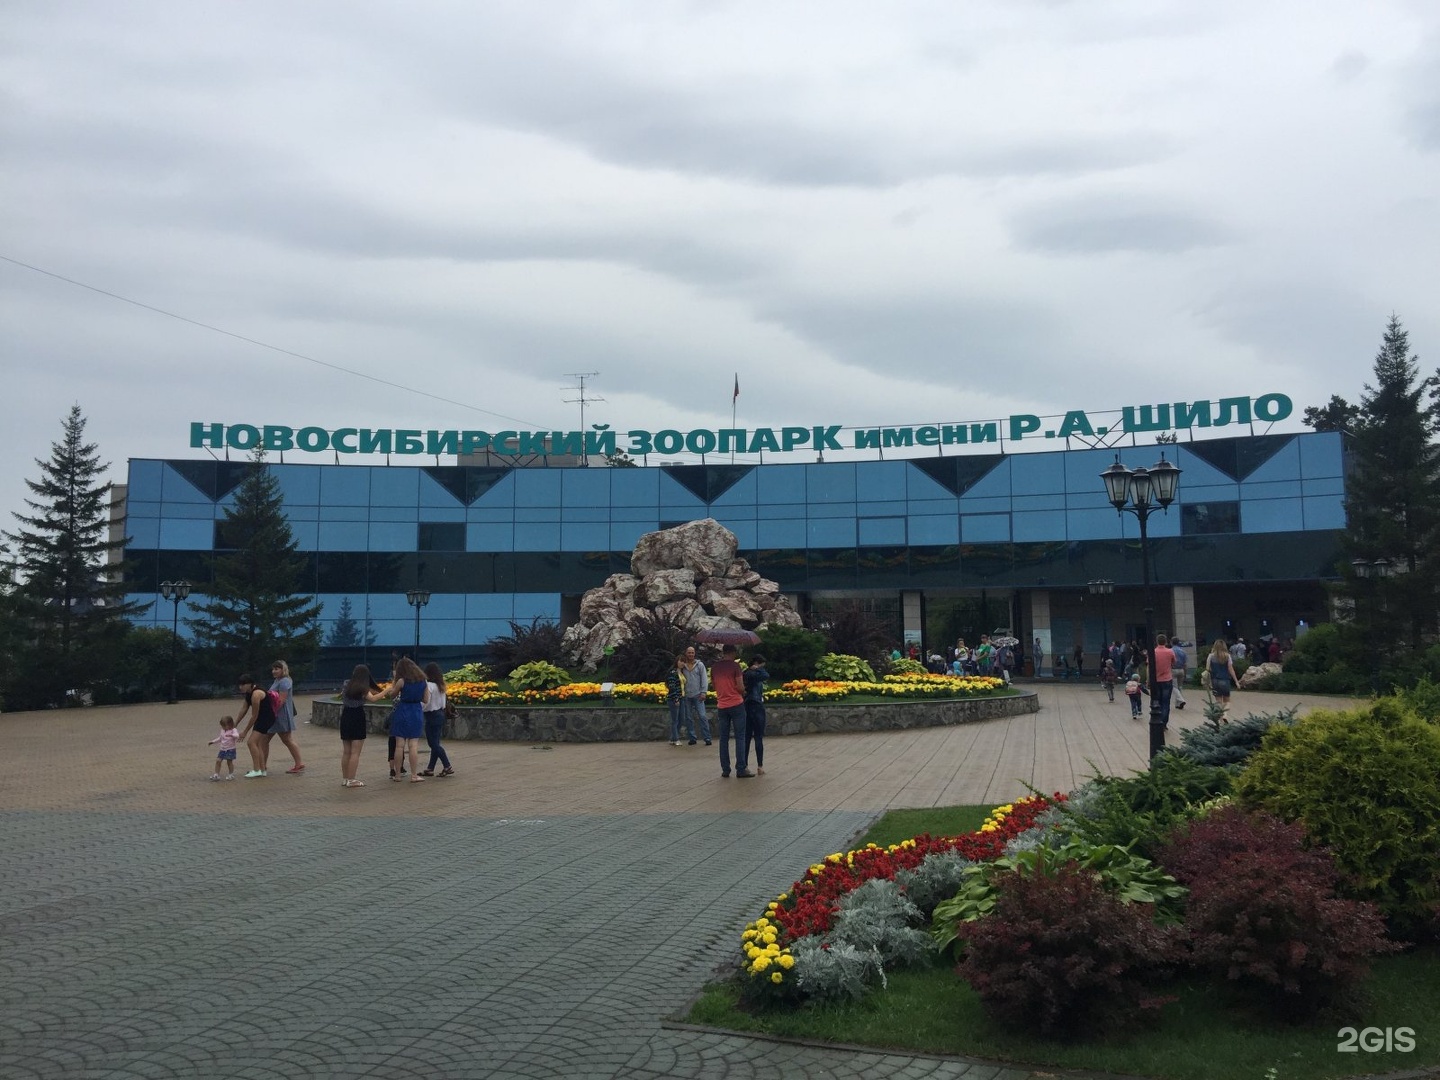 Новосибирский зоопарк имени р.а. Шило, Новосибирск